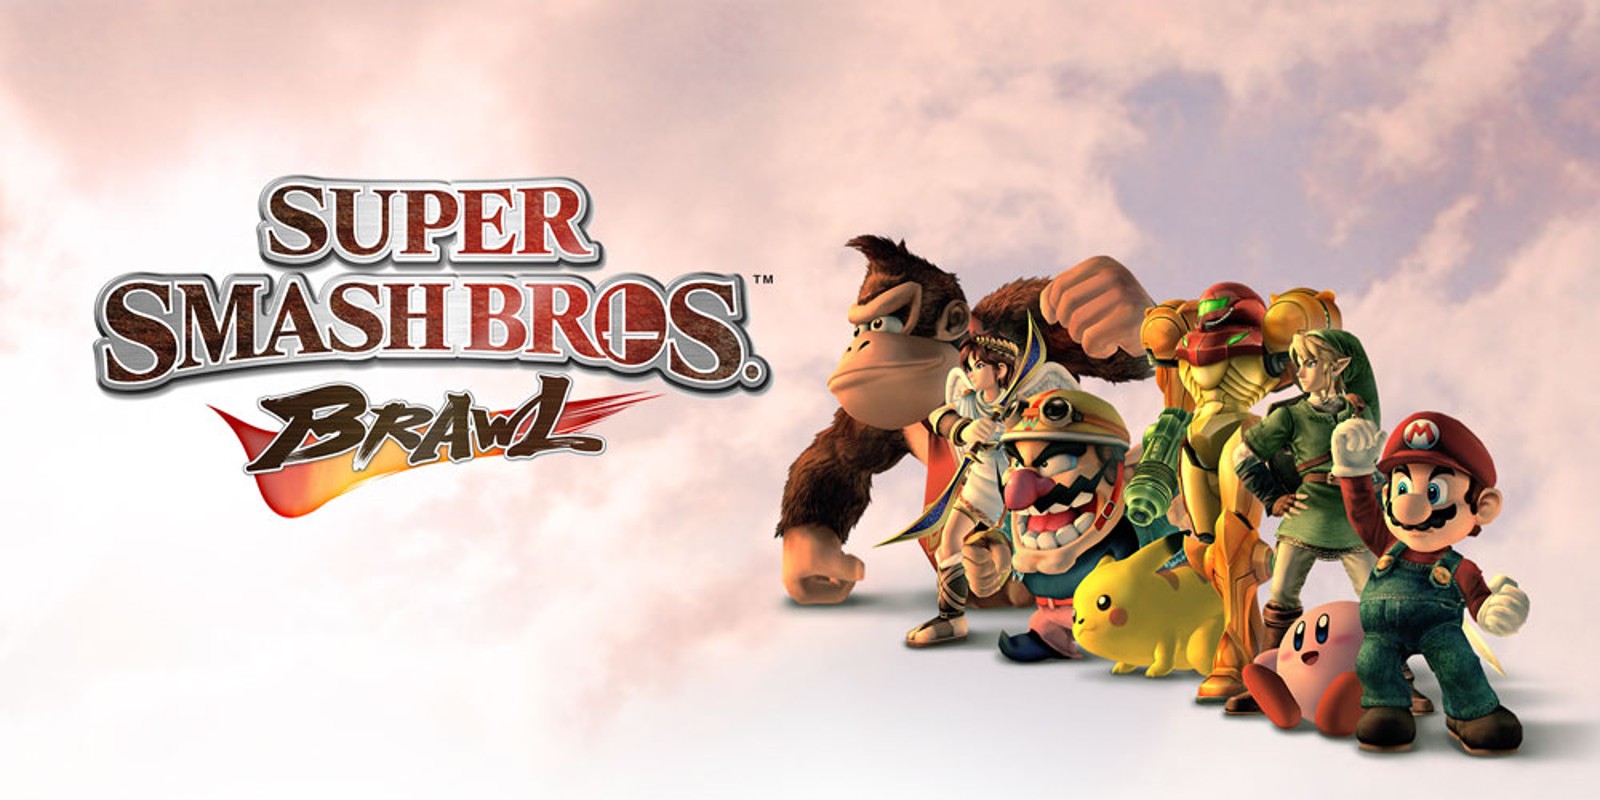 kwaadheid de vrije loop geven Altaar Catastrofe Super Smash Bros. Brawl | Wii | Games | Nintendo